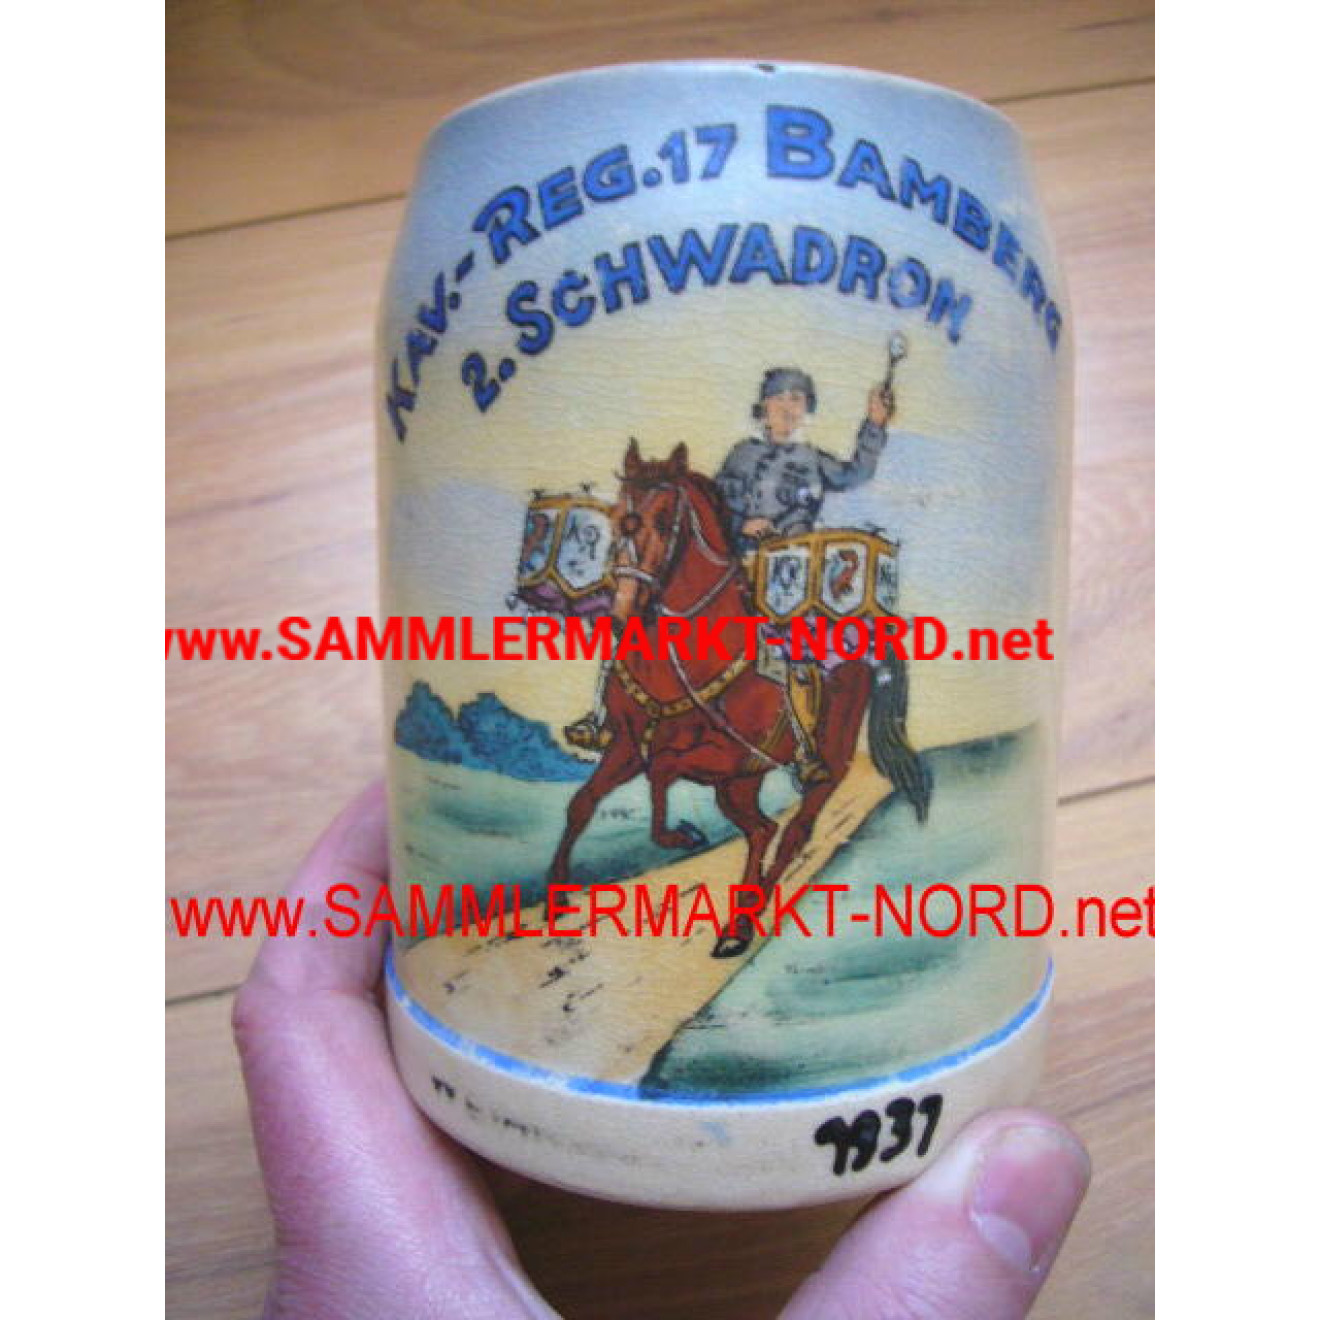 Beer jug Cavallery Regiment 17 - Bamberg - 2nd Schwadron